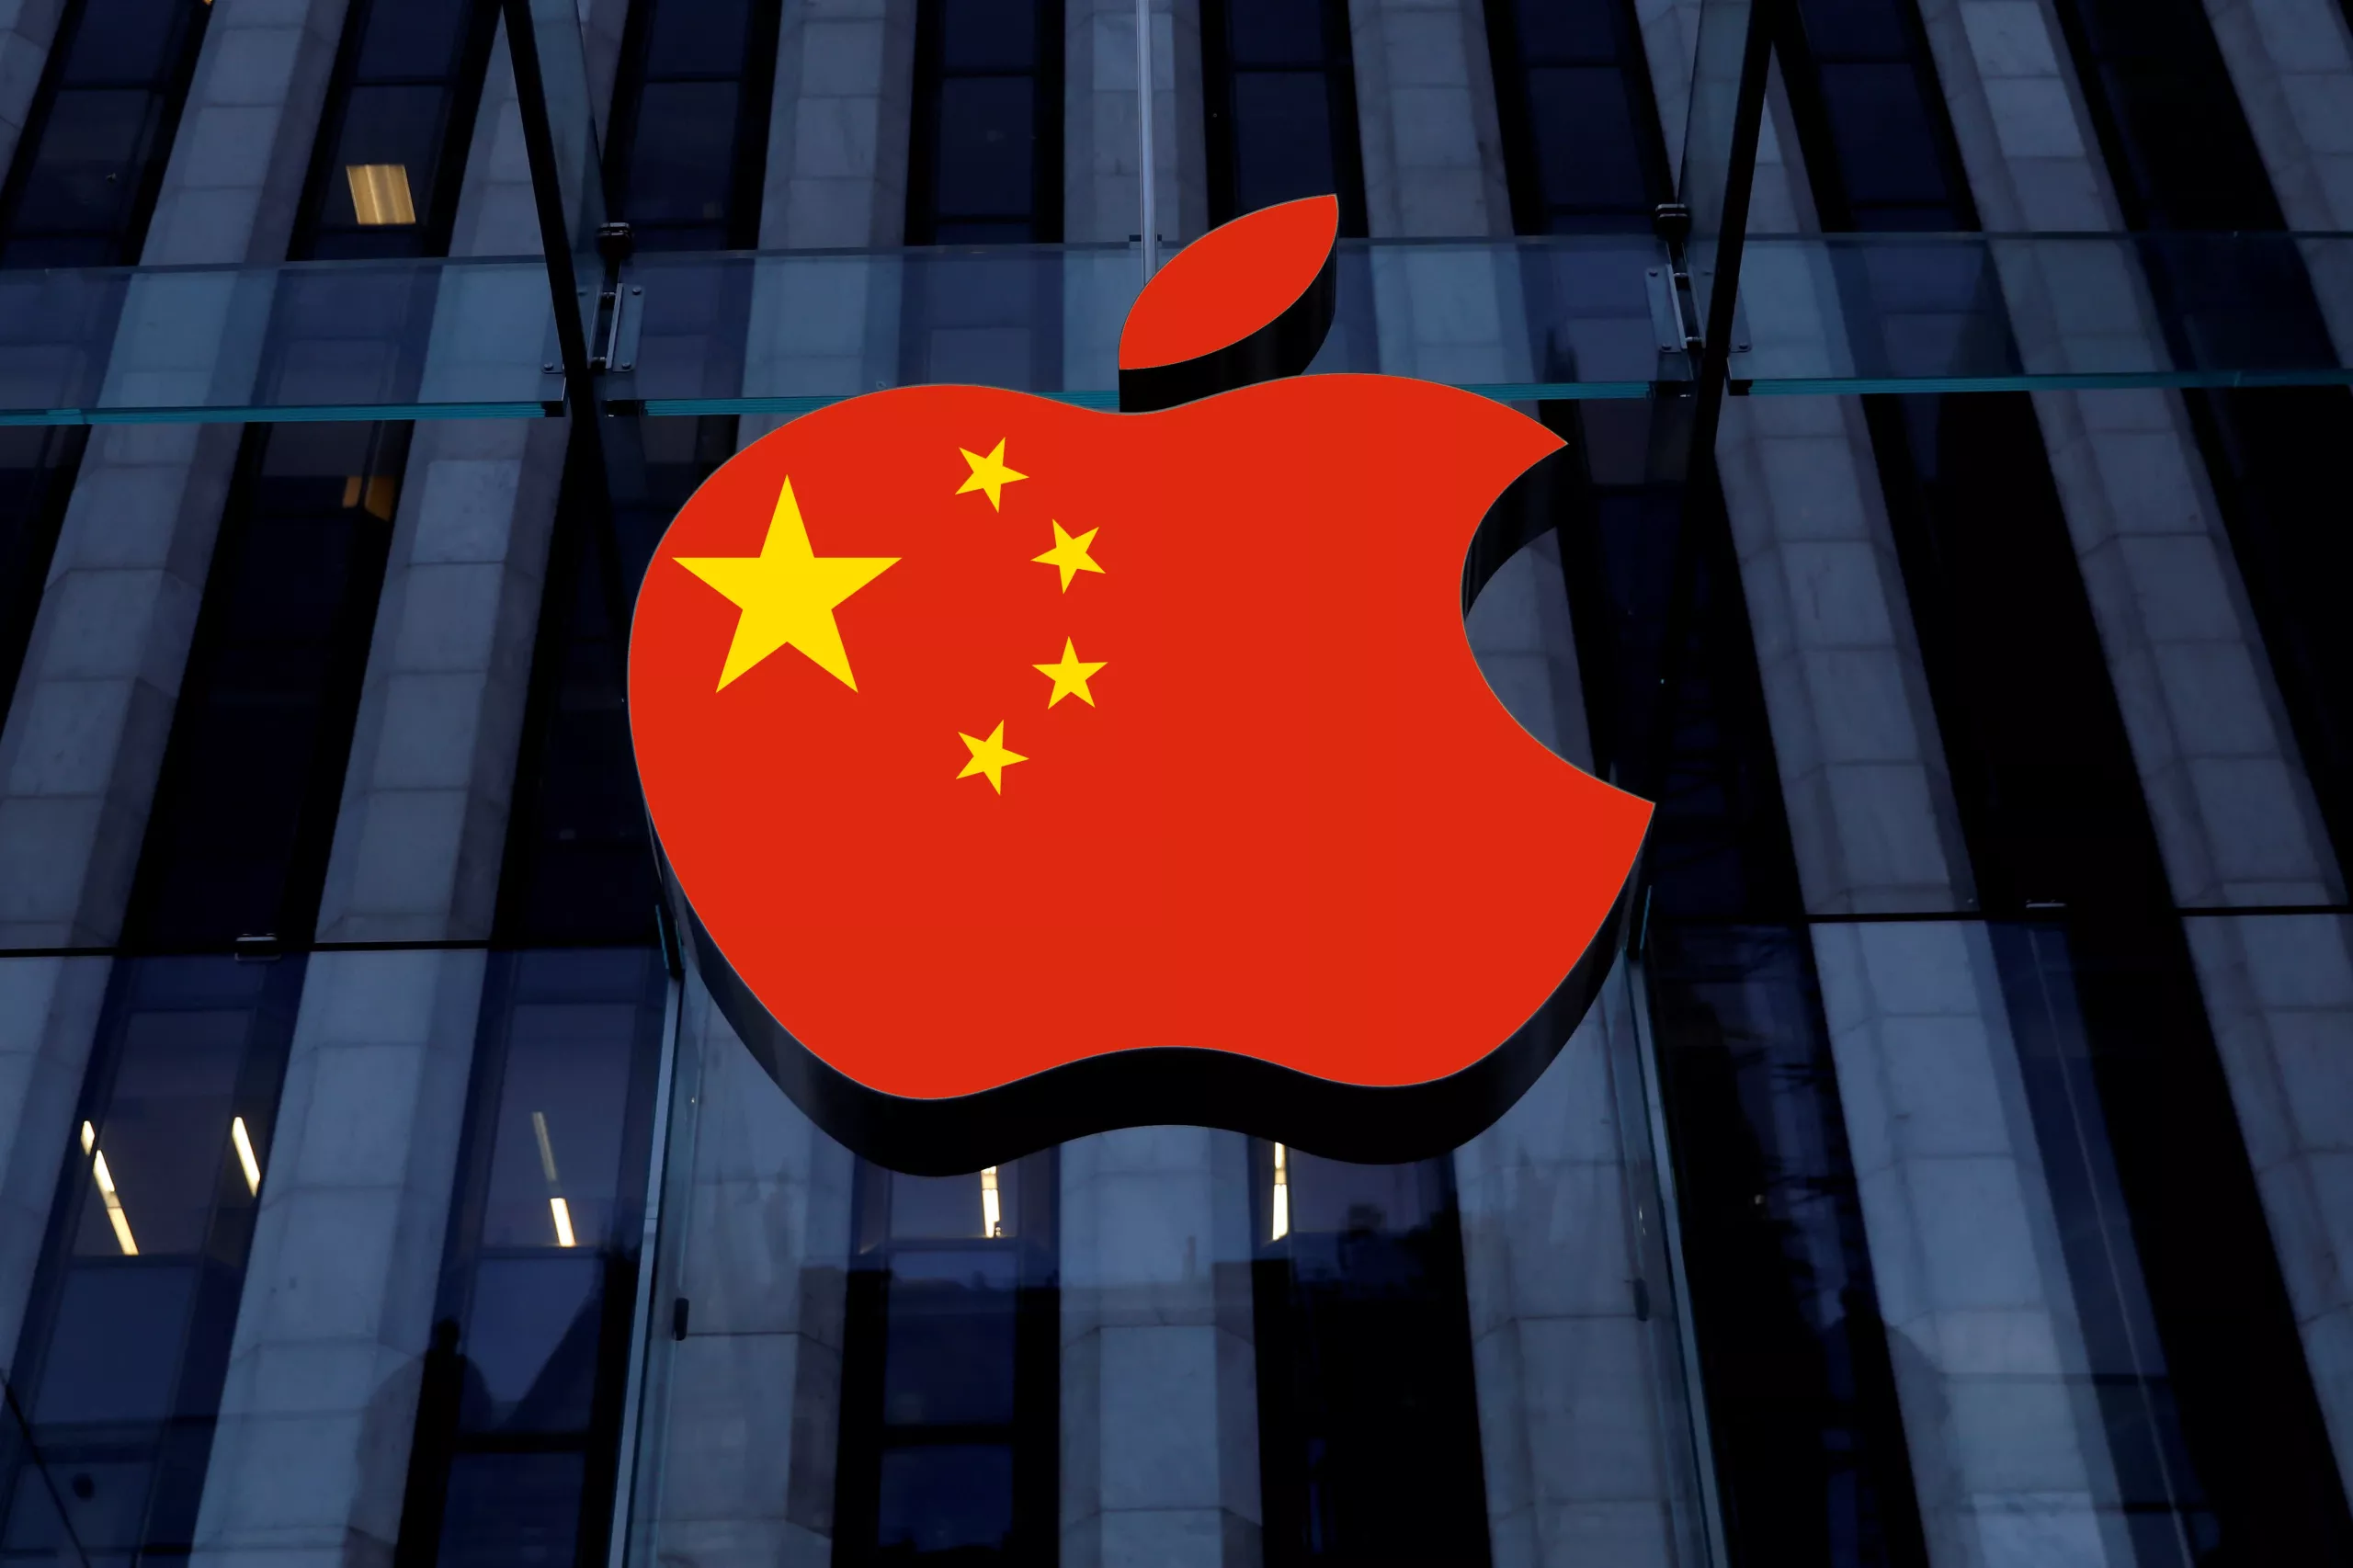 Tim Cook elogia a China y califica su relación con Apple de “simbiótica”